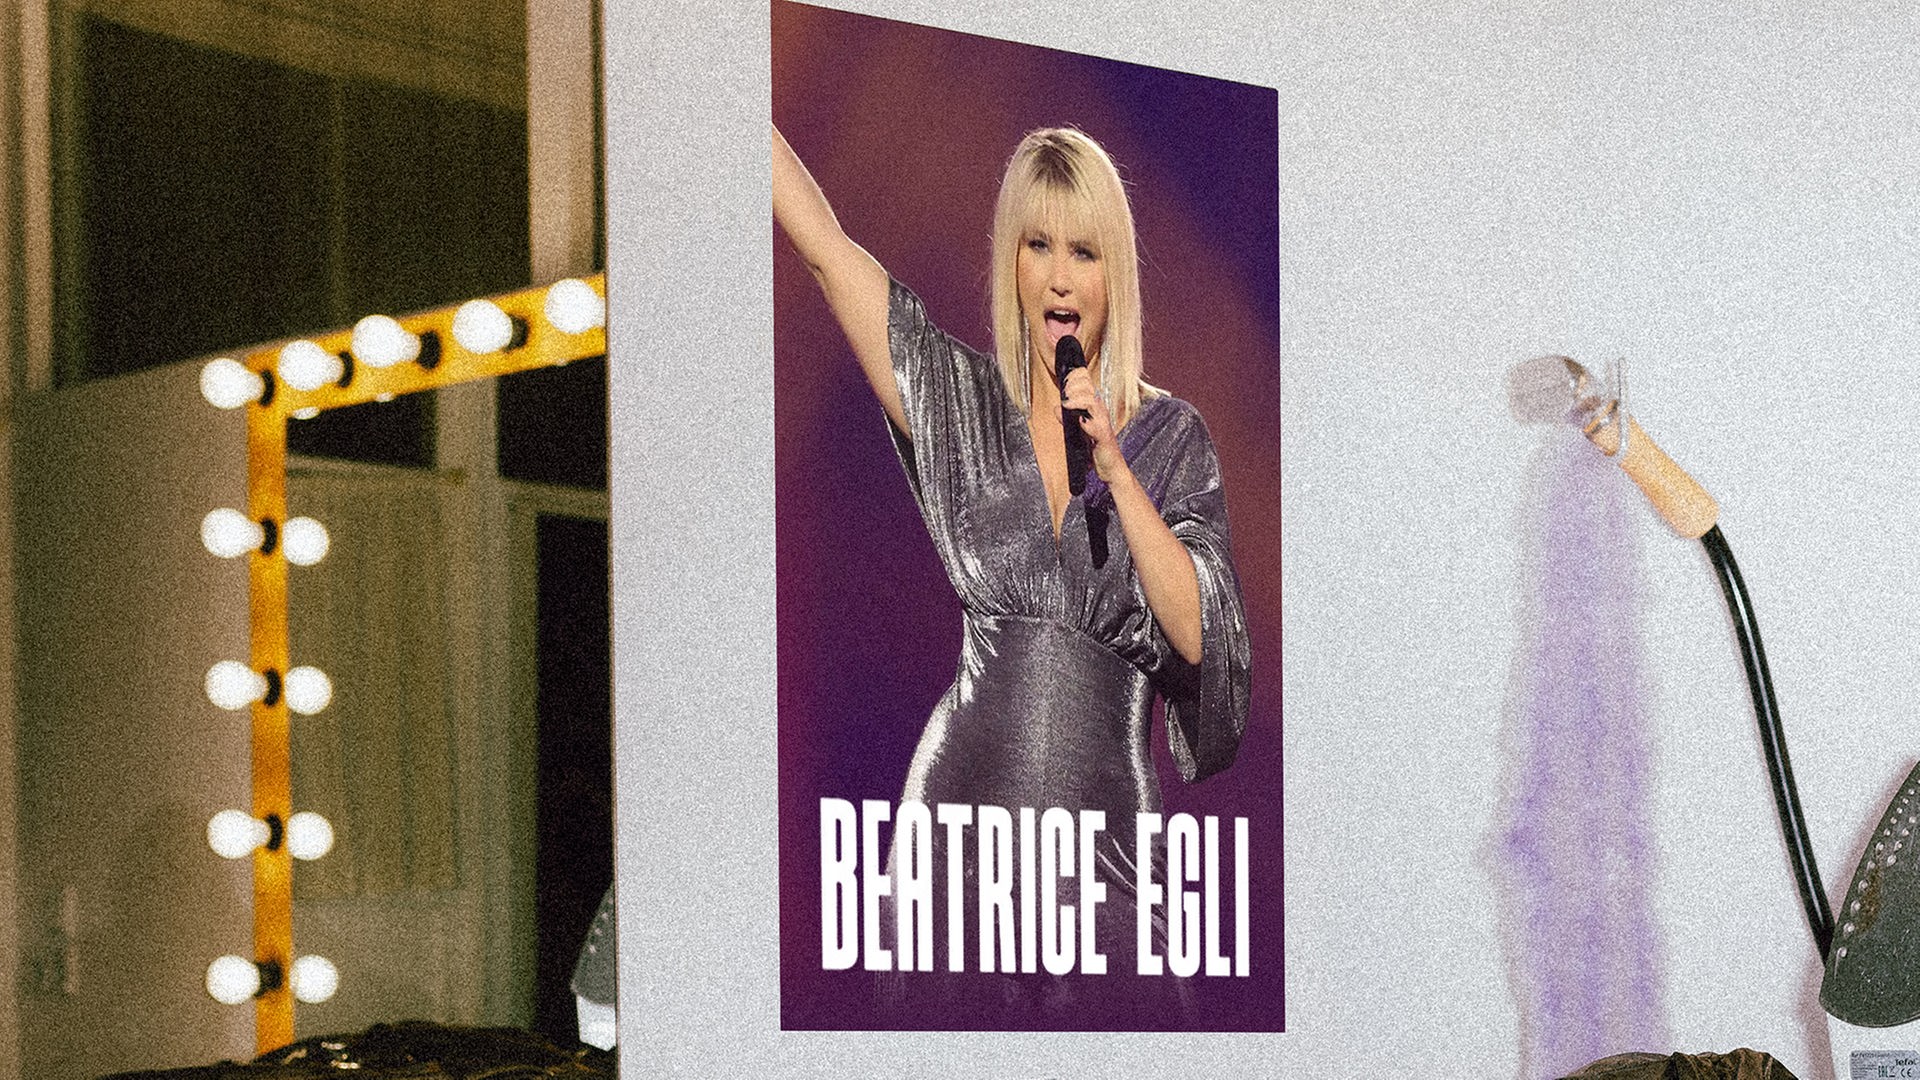 Das Bild zeigt ein Plakat mit der Sängerin Beatrice Egli.